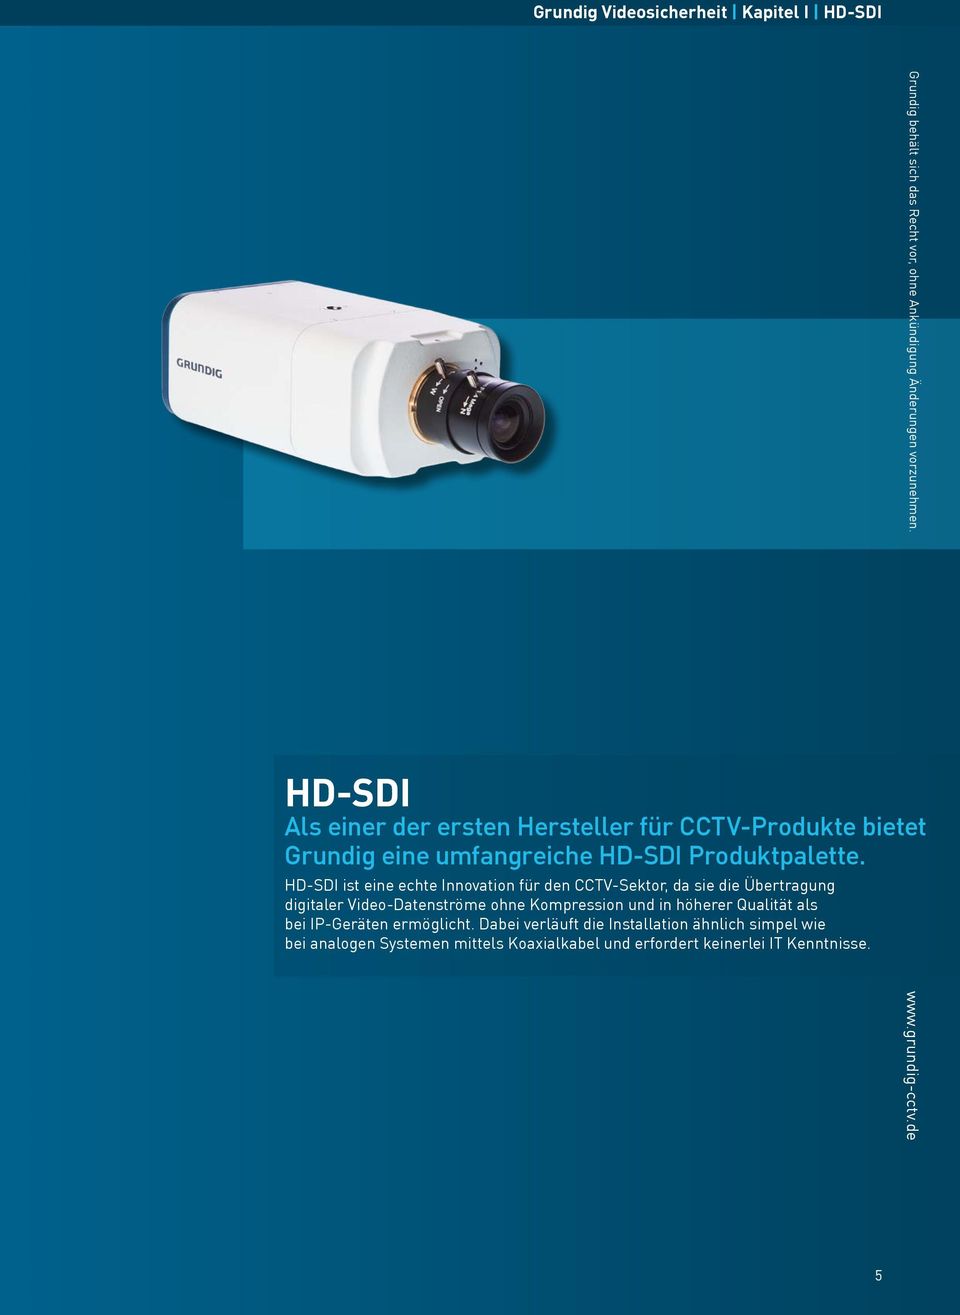 HD-SDI ist eine echte Innovation für den CCTV-Sektor, da sie die Übertragung digitaler Video-Datenströme ohne Kompression und in